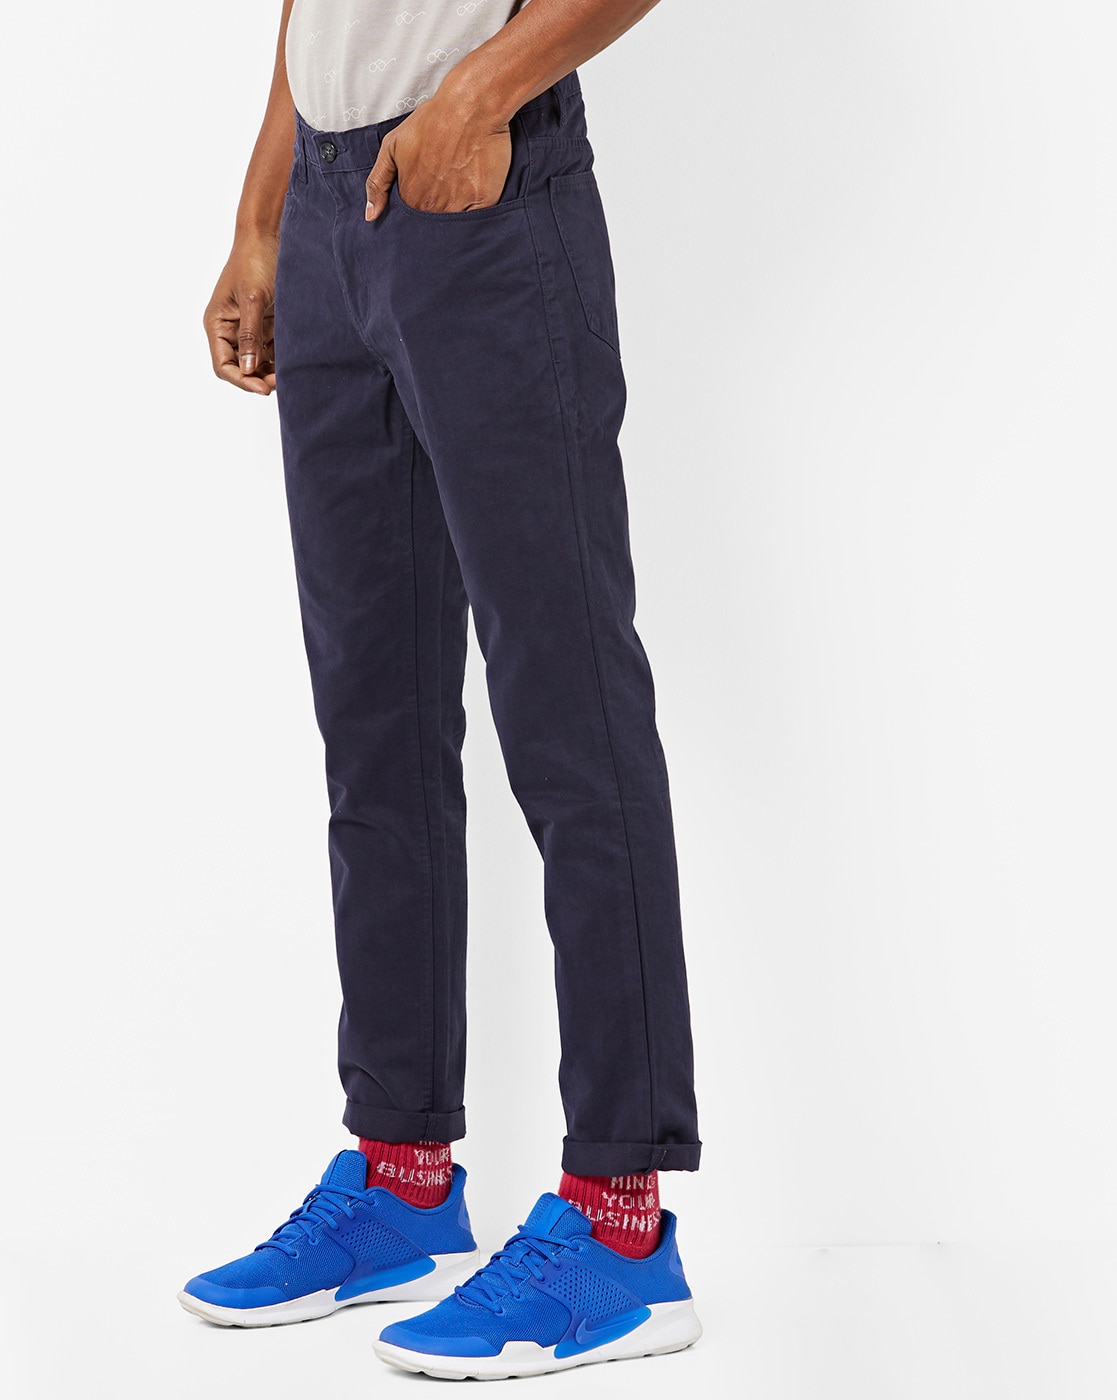 Buy Khaki Trousers  Pants for Men by BREAKBOUNCE Online  Ajiocom